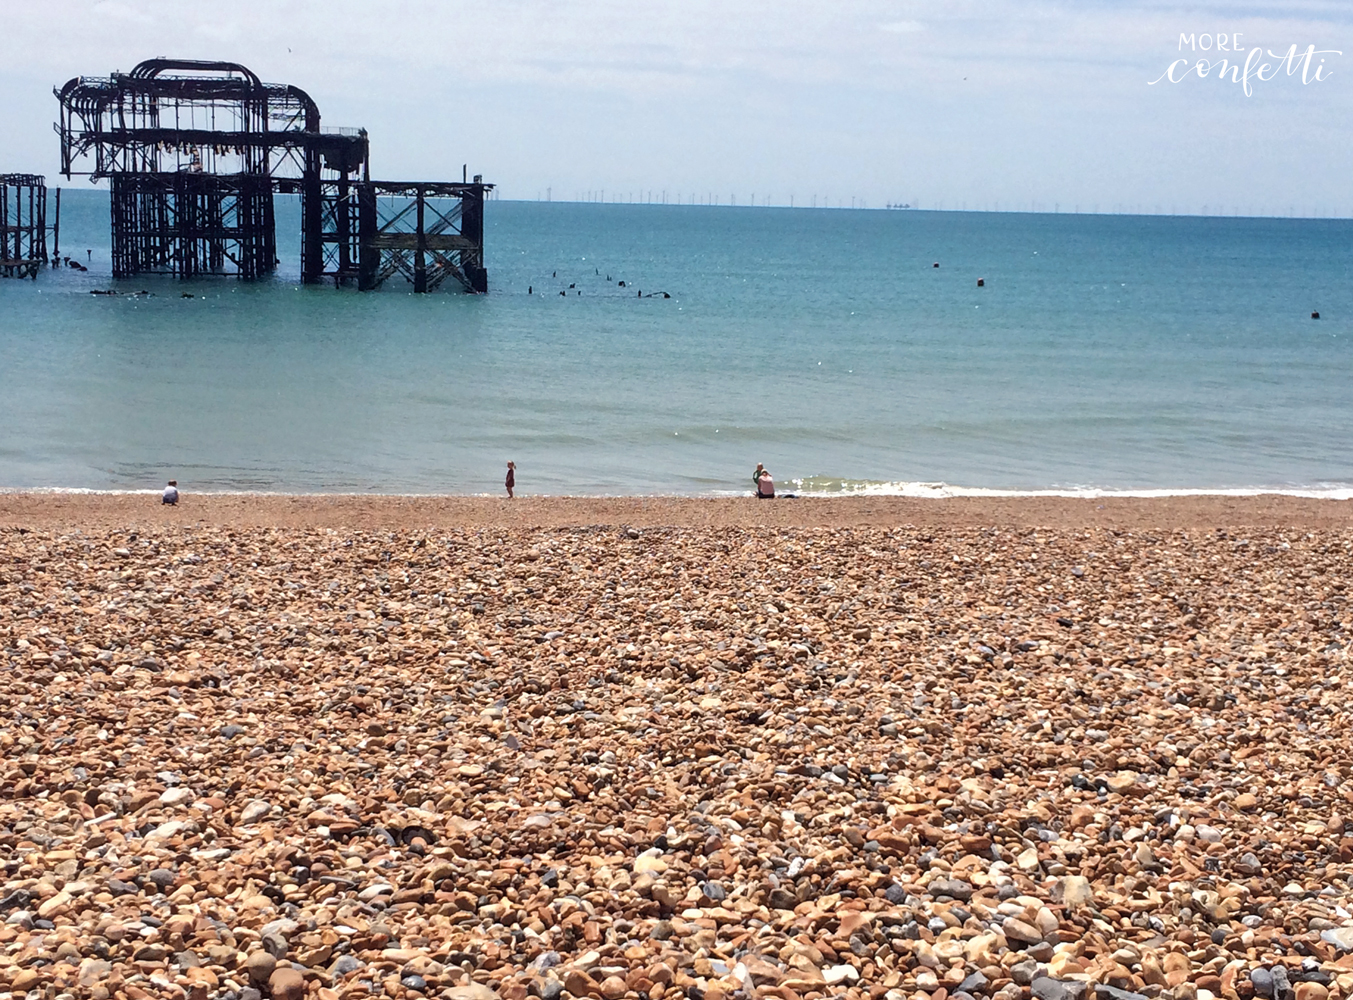 Brighton - engliches Seebad - für jeden etwas dabei - moreconfett.de